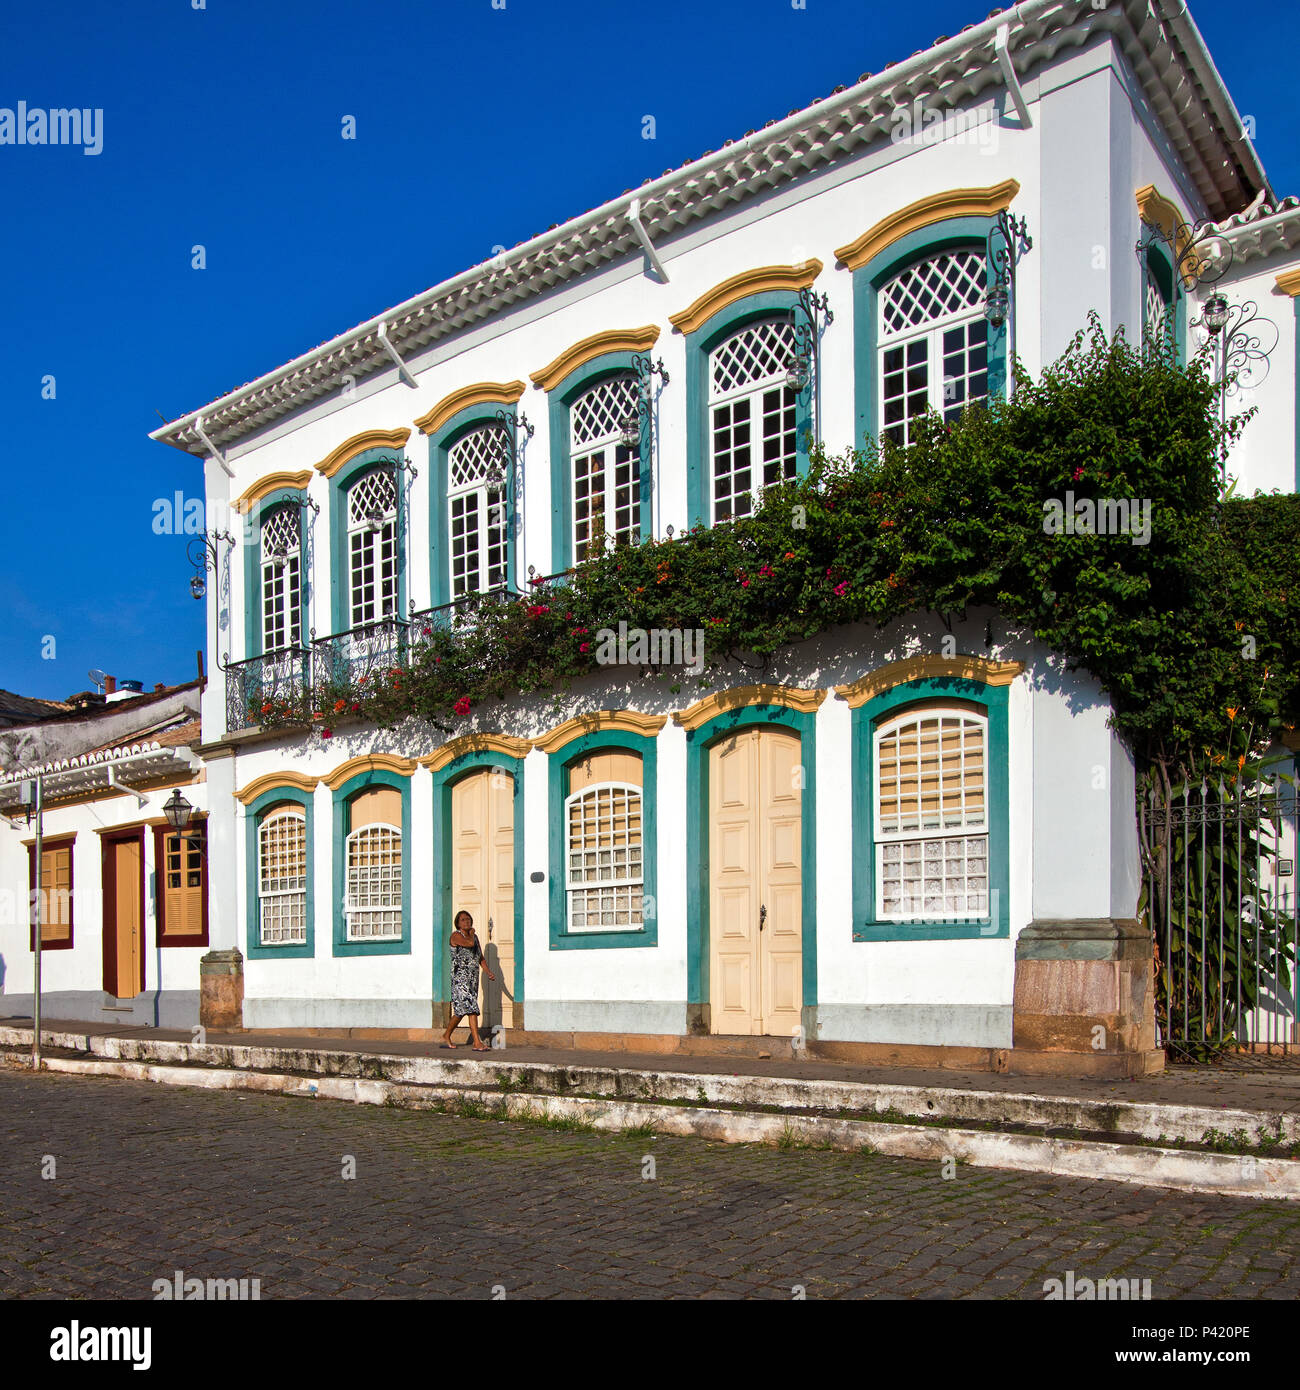 File:Fachada das casas antigas em São João del-Rei-MG (1512648952).jpg -  Wikimedia Commons